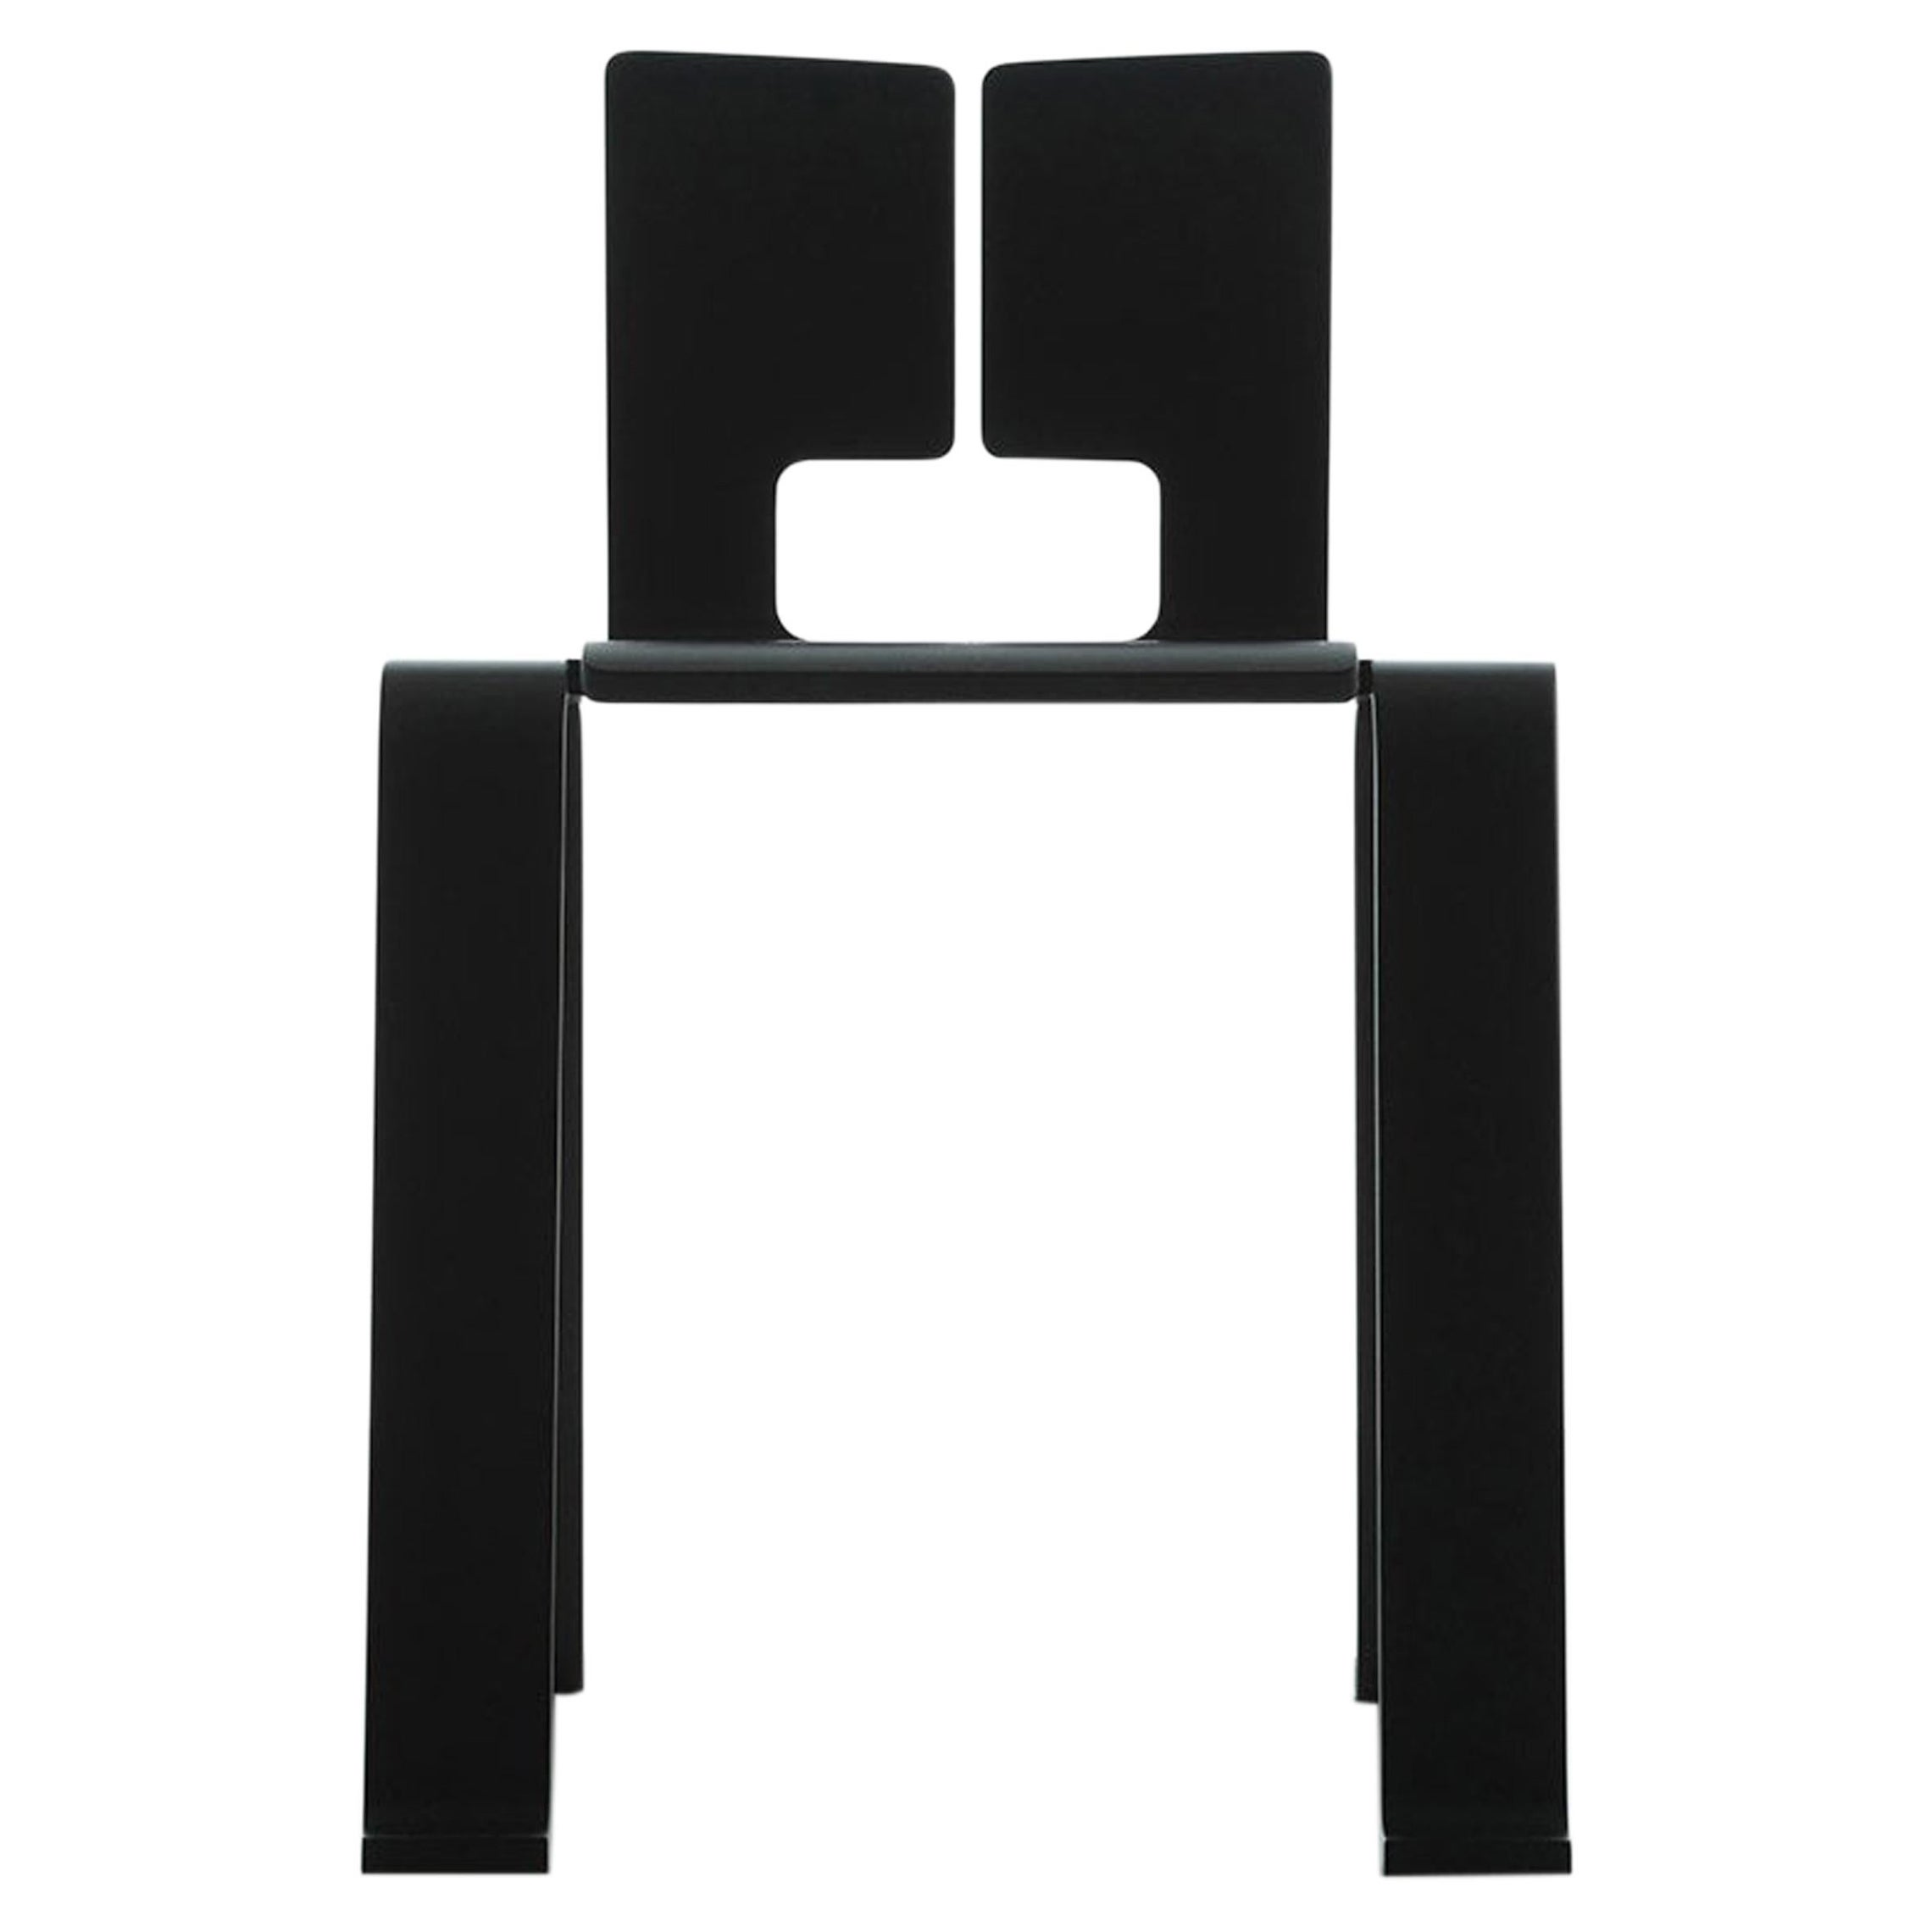 Chaise Ombra Tokyo de Charlotte Perriand, en chêne teinté noir par Cassina